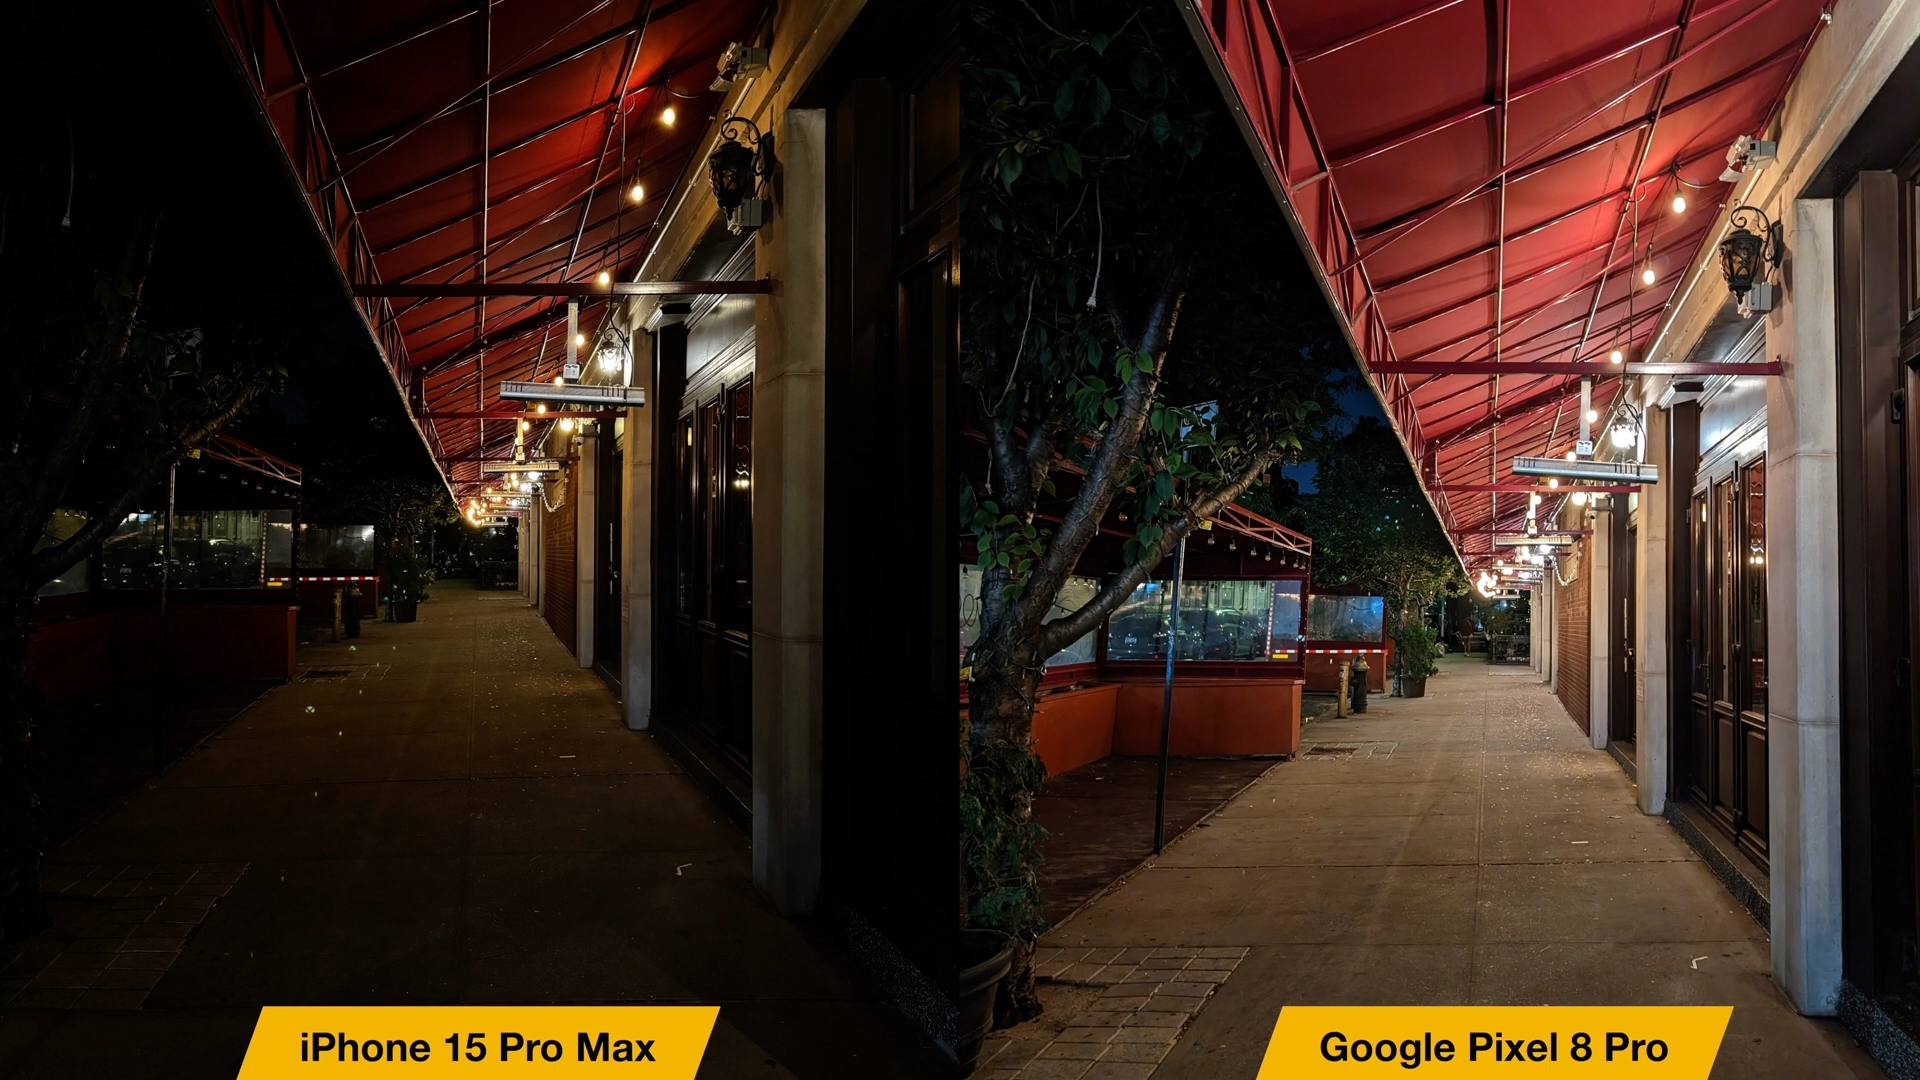 来自 iPhoneIslam.com，两张街道上有两盏灯的照片，iPhone 15 Pro Max 和 Google Pixel 8 Pro 的比较。